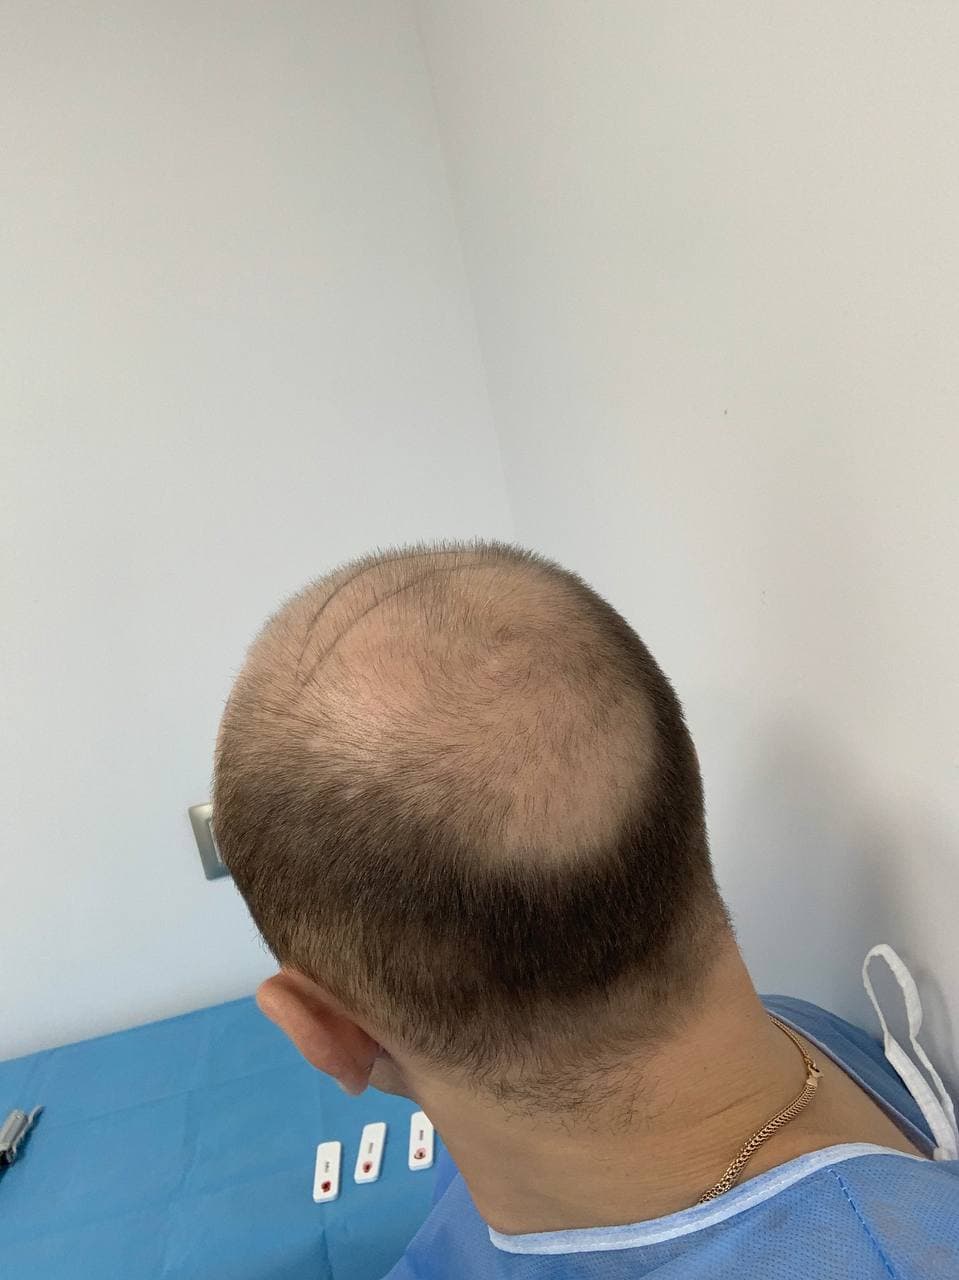 Пересадка волос в стамбуле. Доктор Бирджан пересадка волос. Голова после трансплантации волос. Мужчины после пересадки волос в Турции.